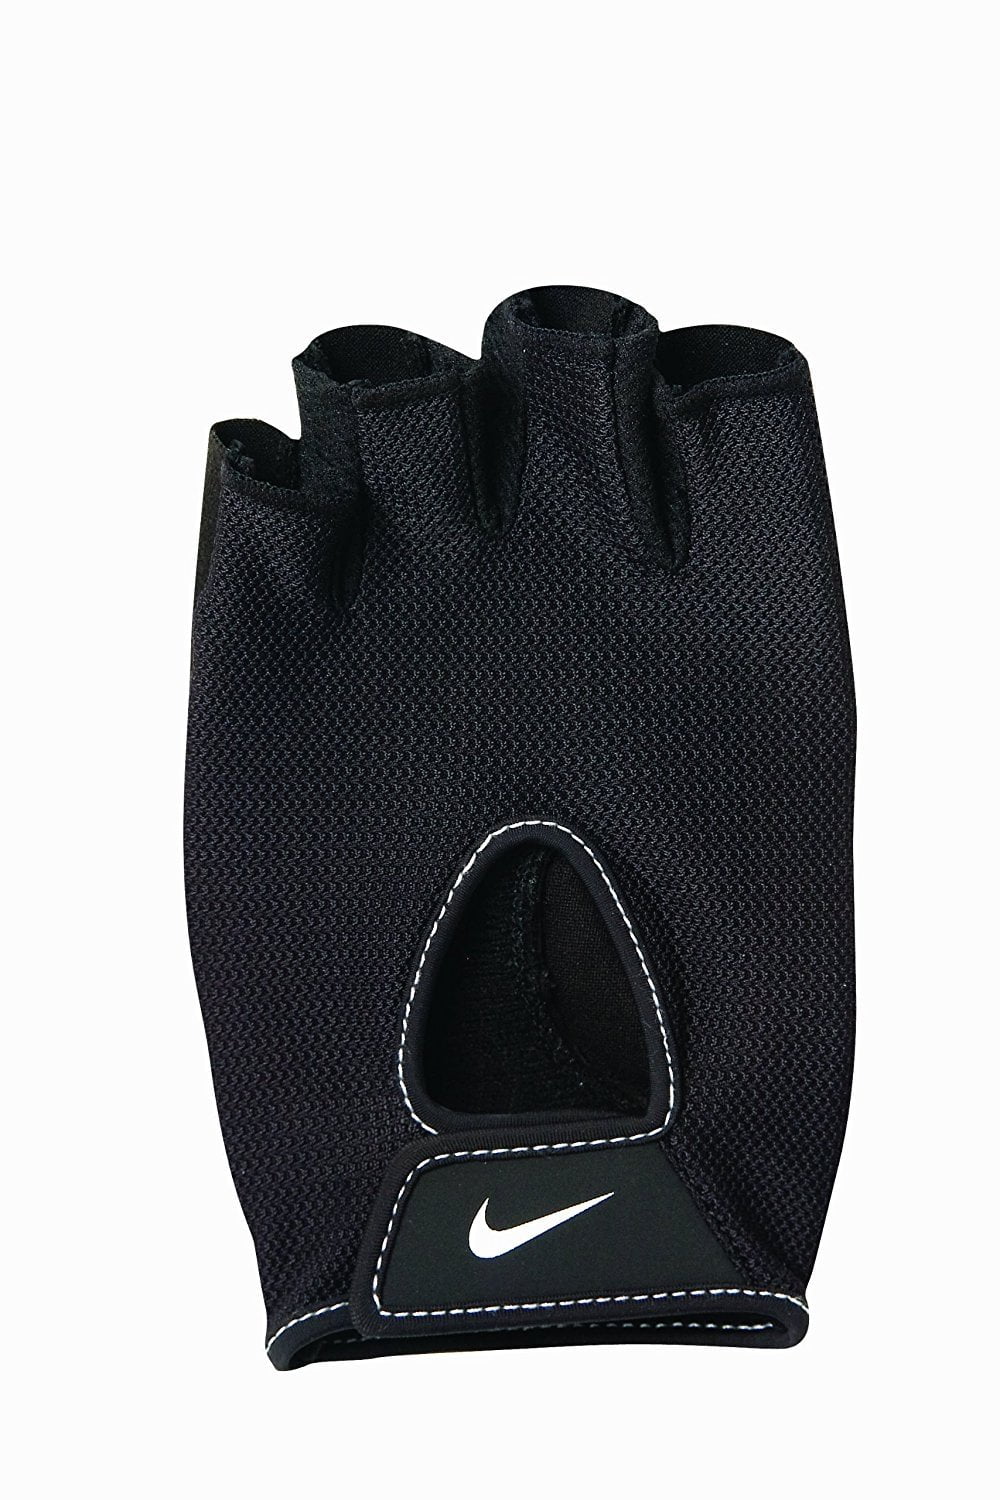 Spin ring toevoegen aan Nike Fundamental Training Gloves - Walmart.com